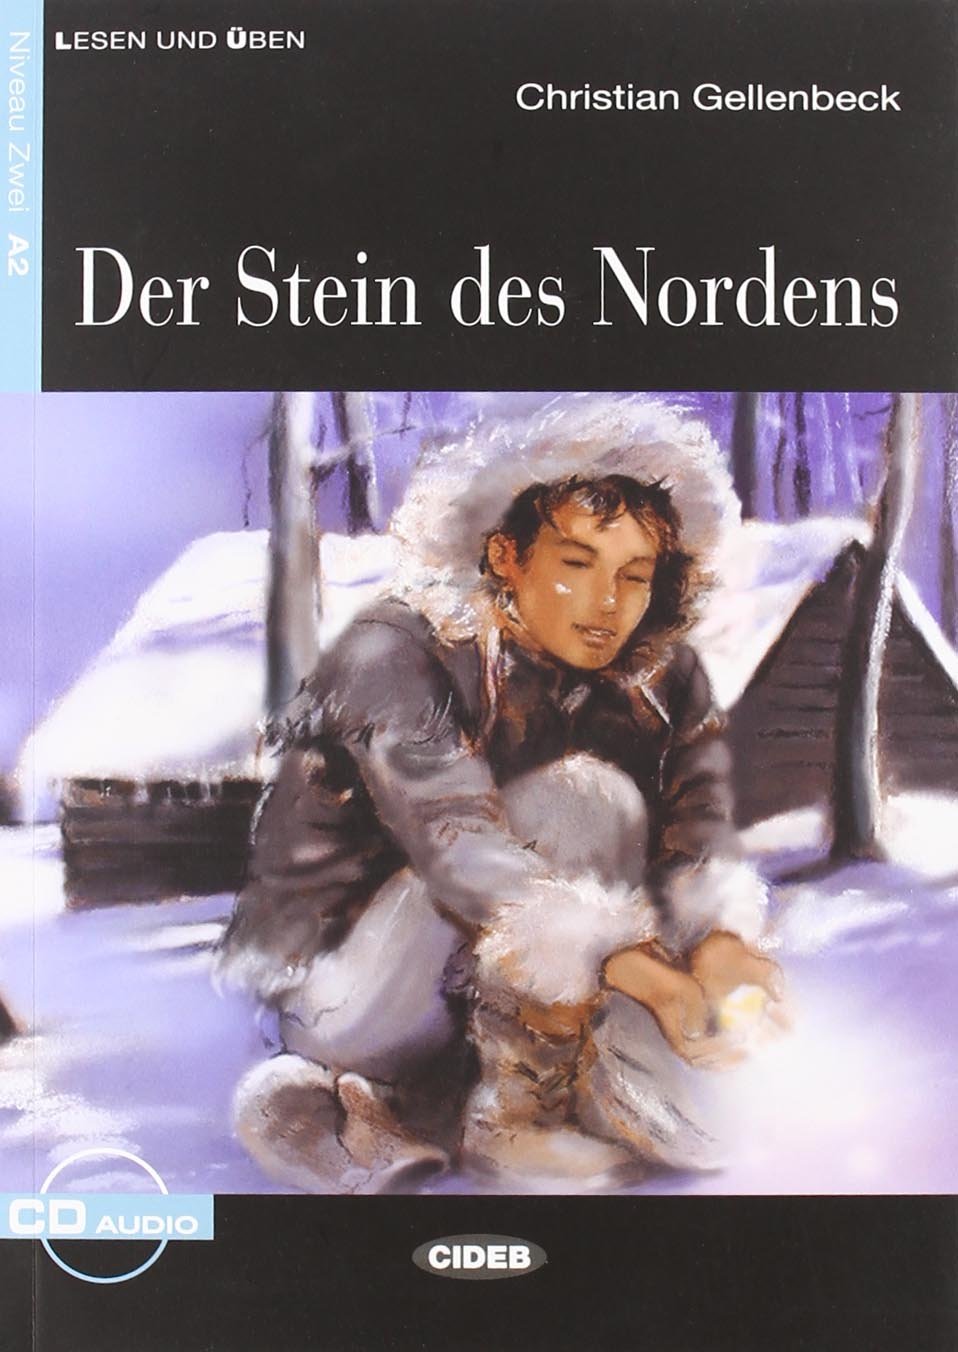 De L&U A2 Der Stein des Nordens +CD OP!